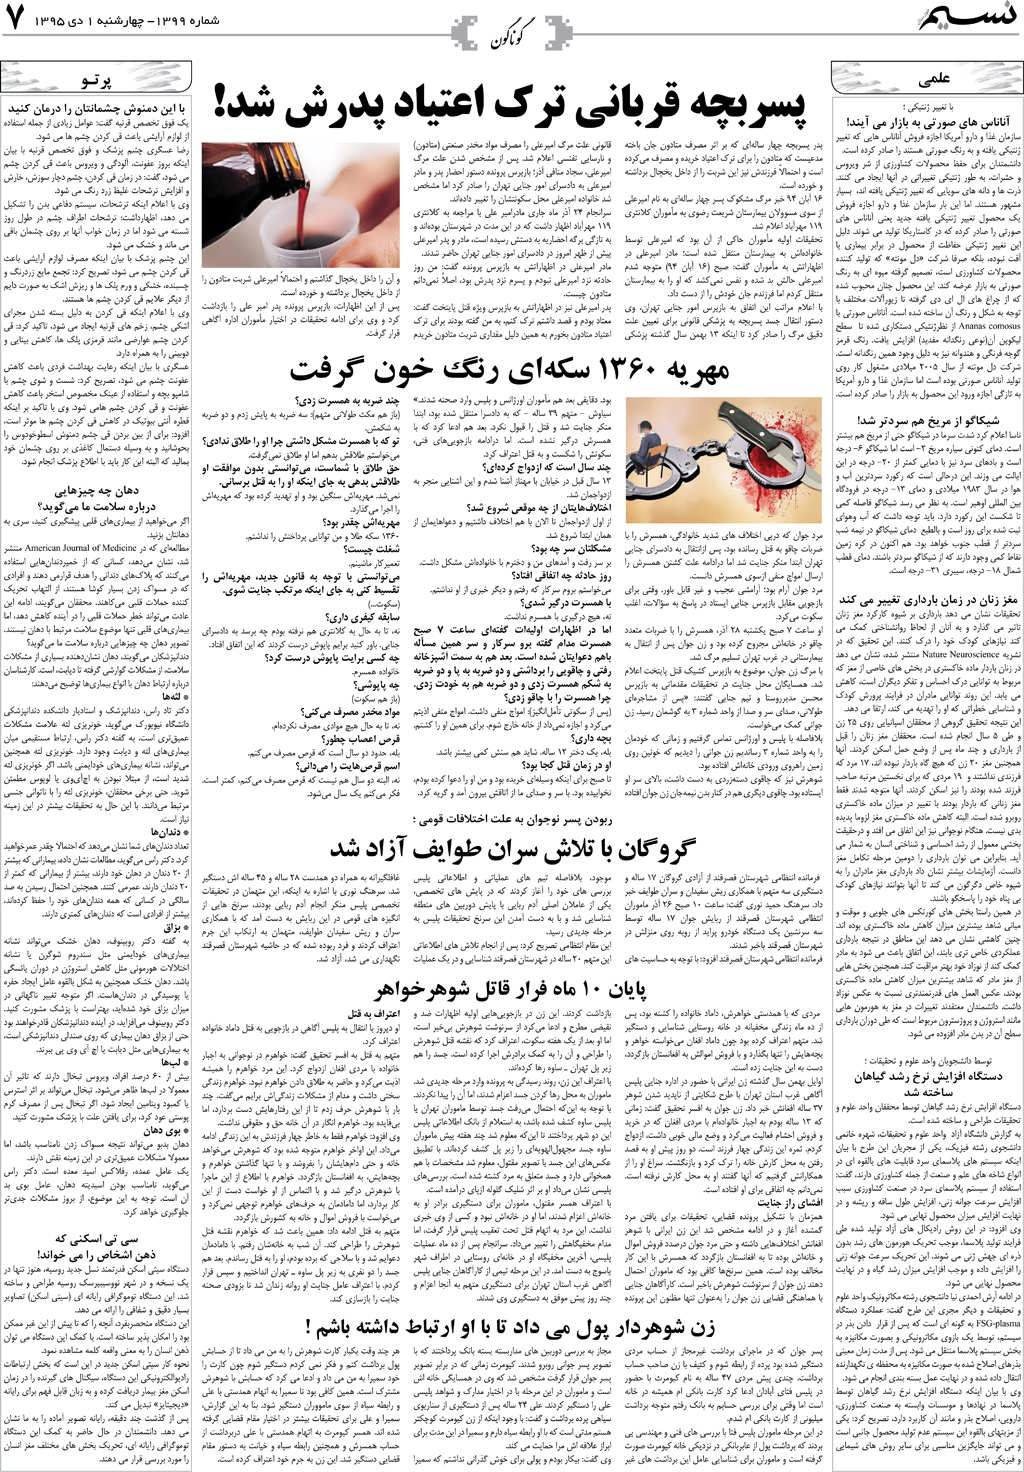 صفحه گوناگون روزنامه نسیم شماره 1399